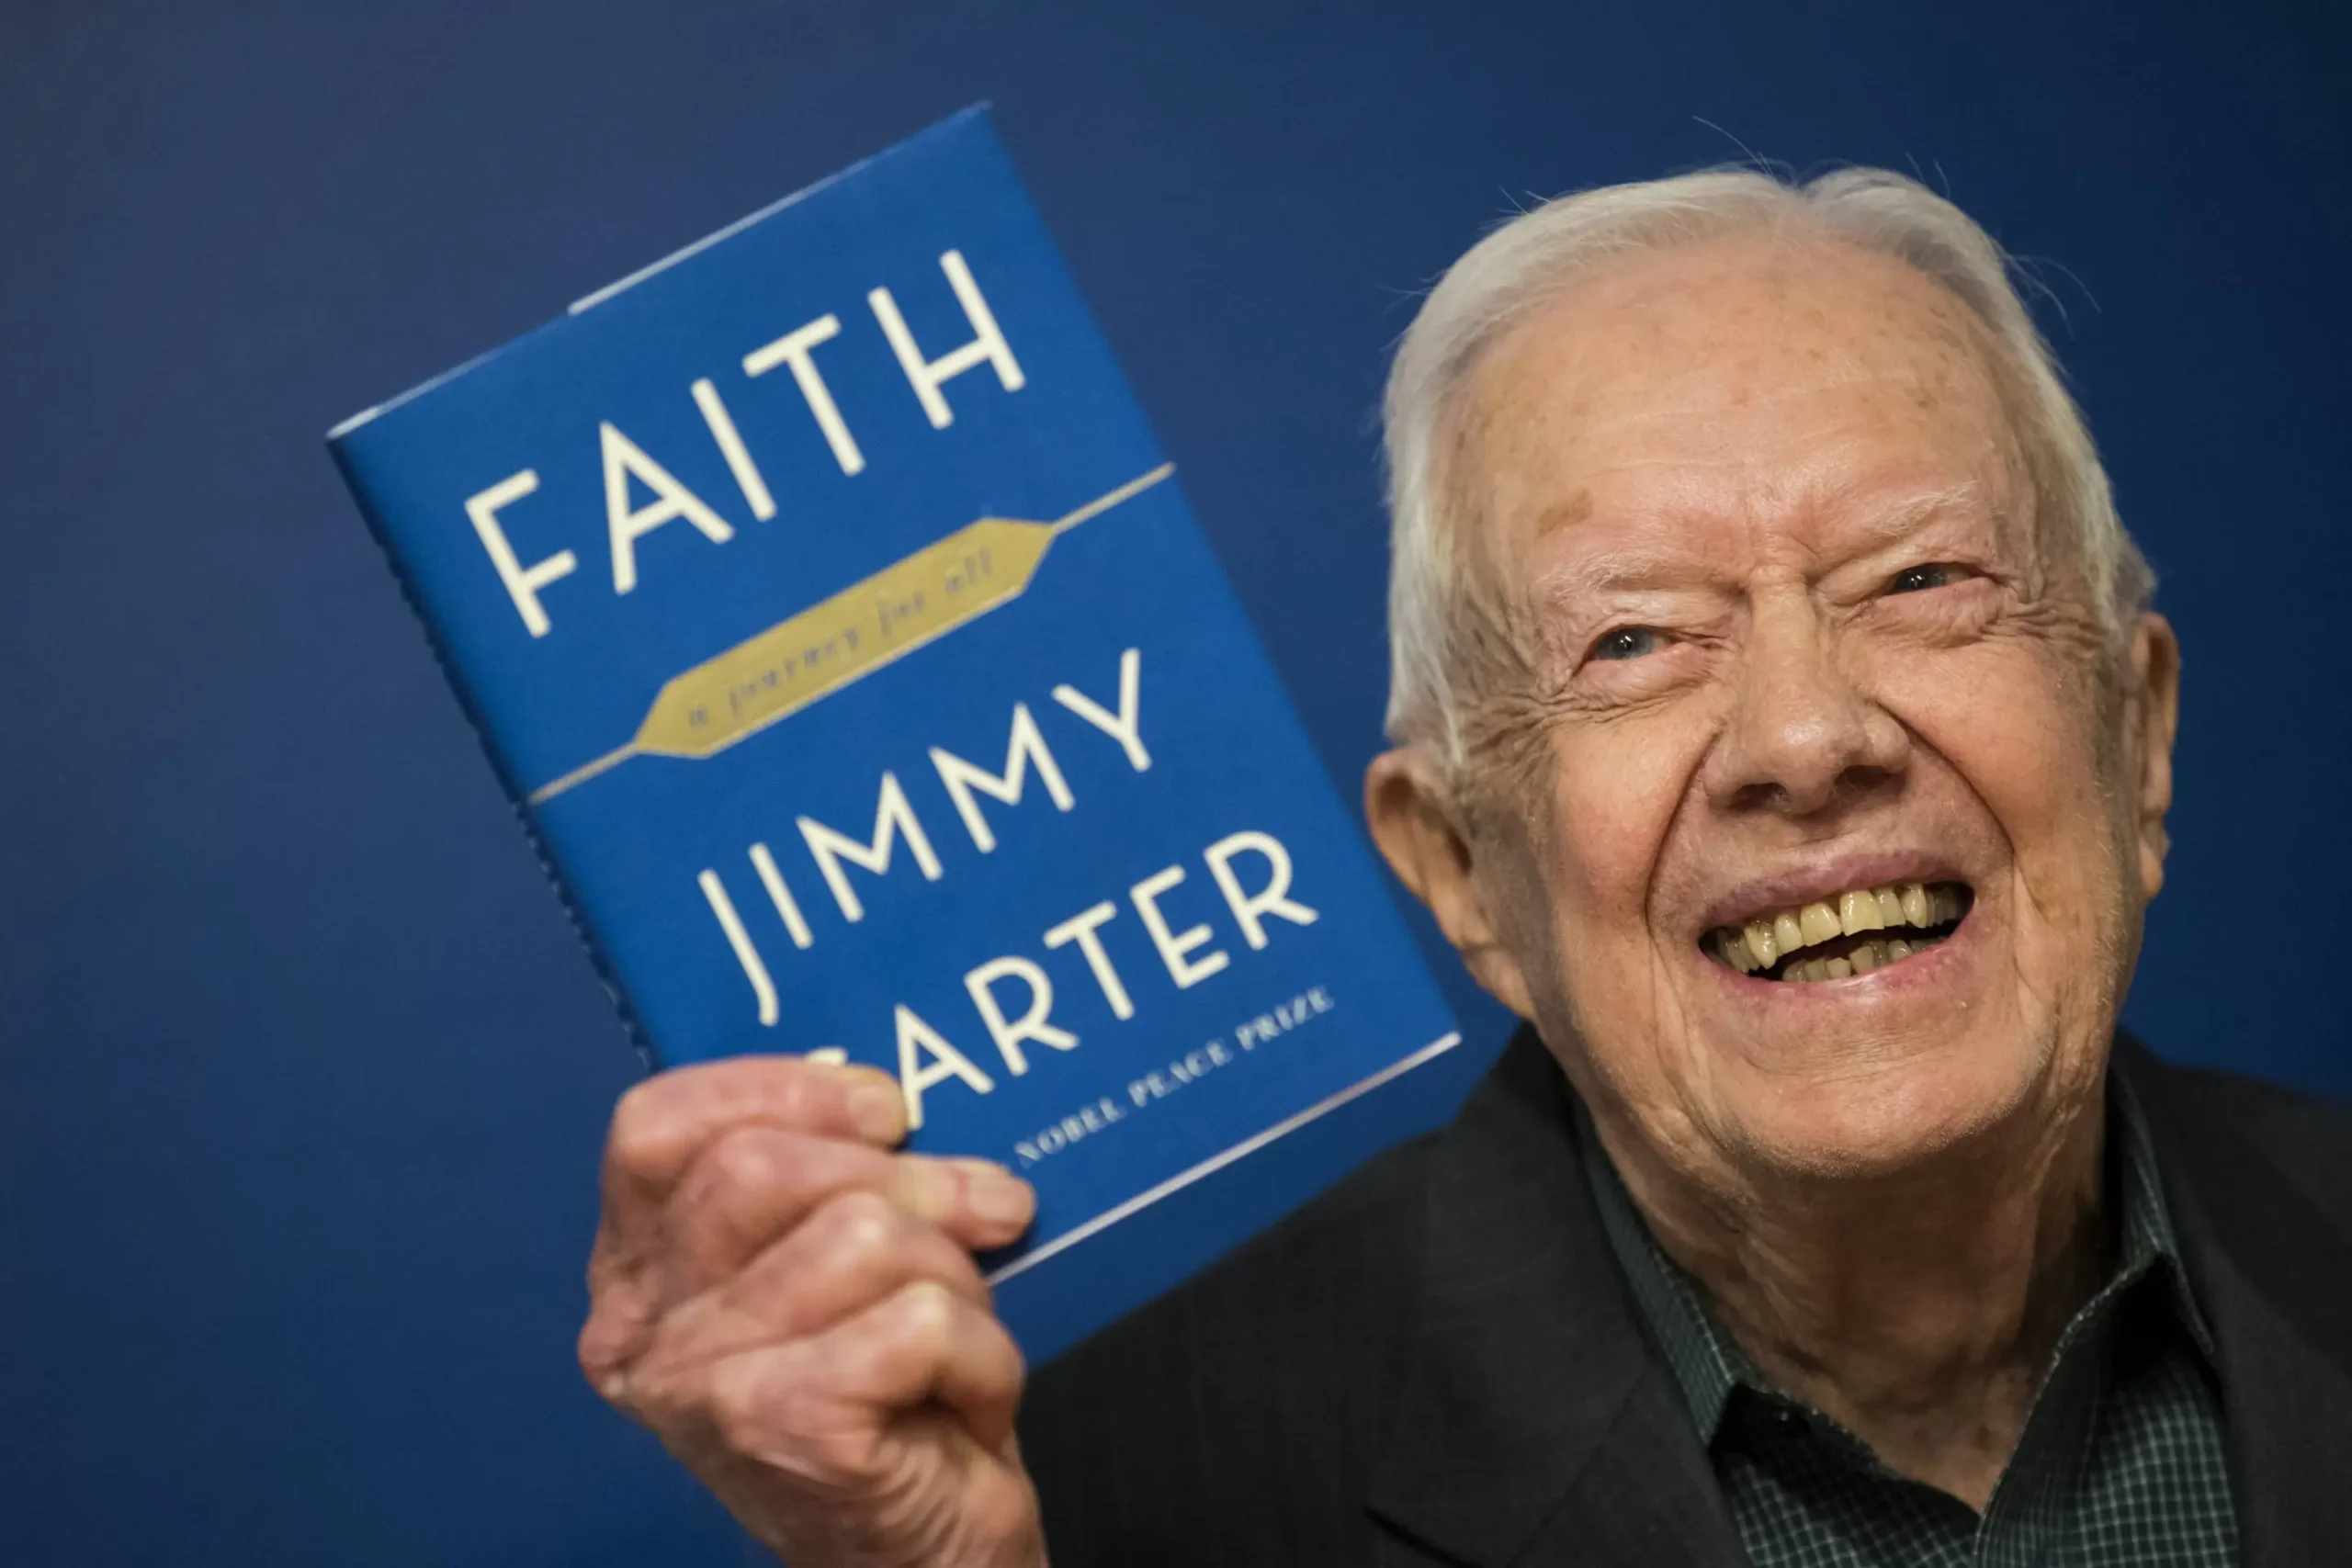  Jimmy Carter